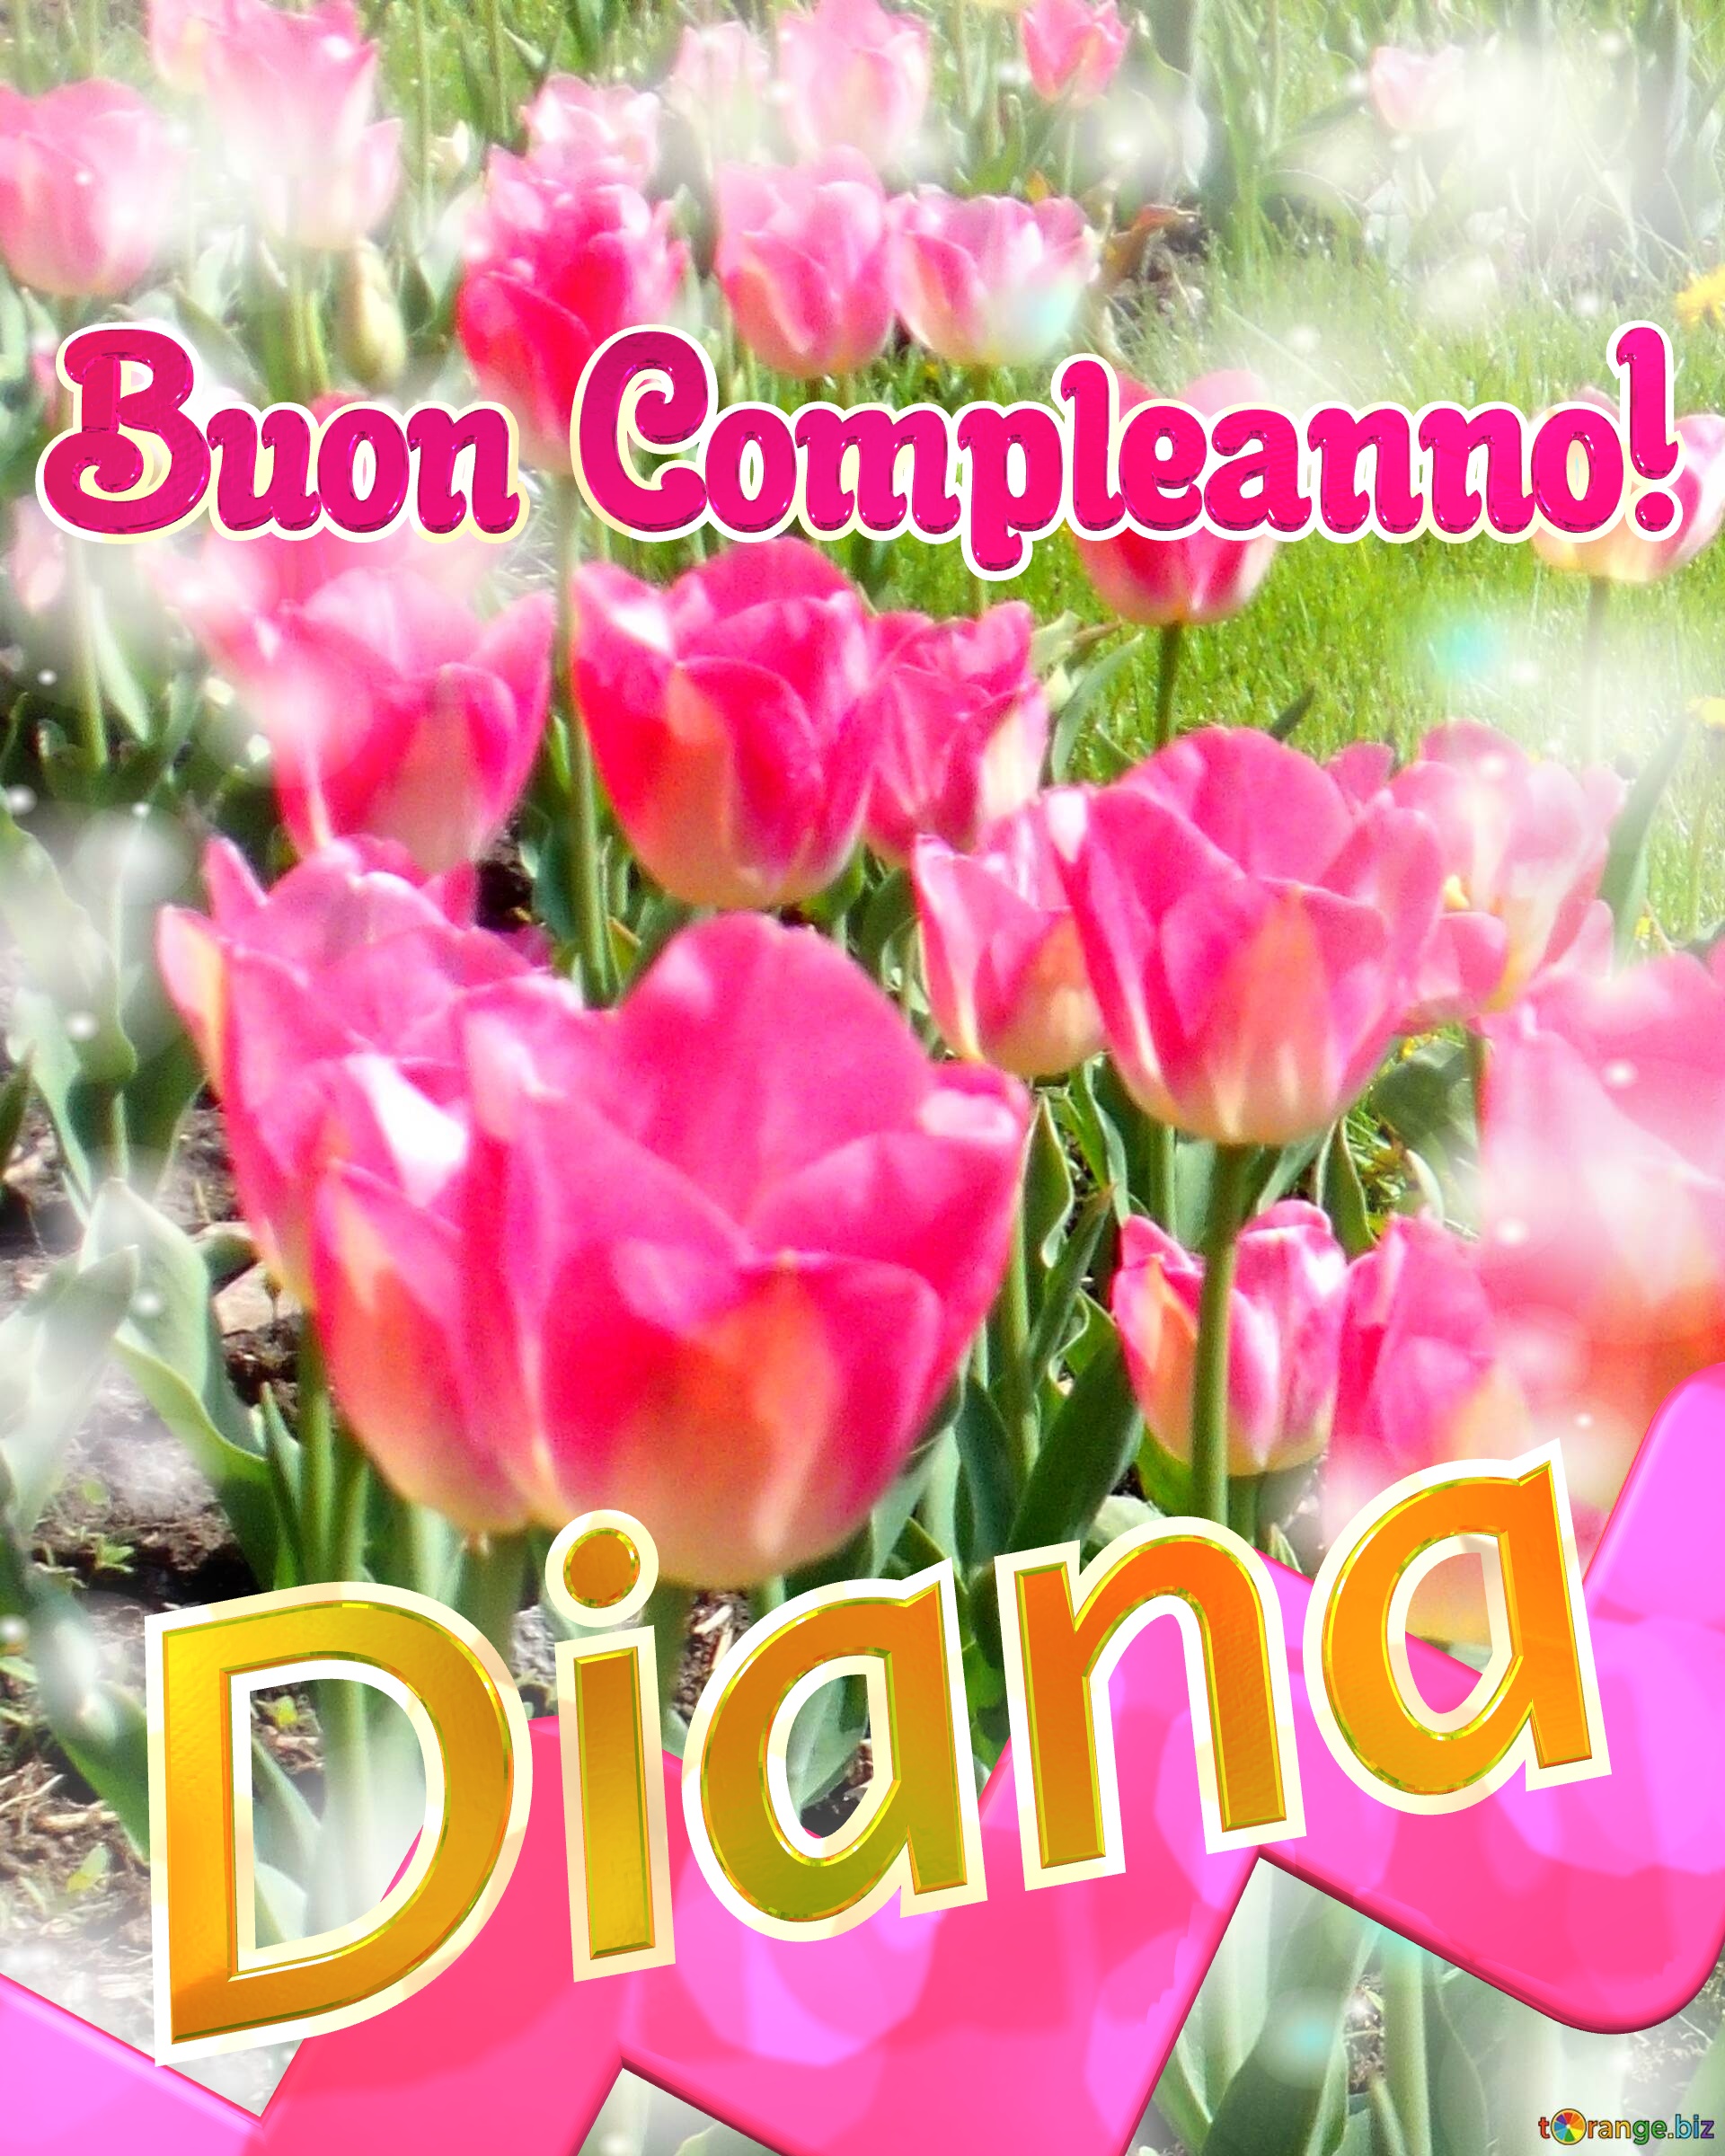 Buon Compleanno! Diana   Buona primavera, che questi tulipani ti portino la freschezza e la vitalità della stagione. №0